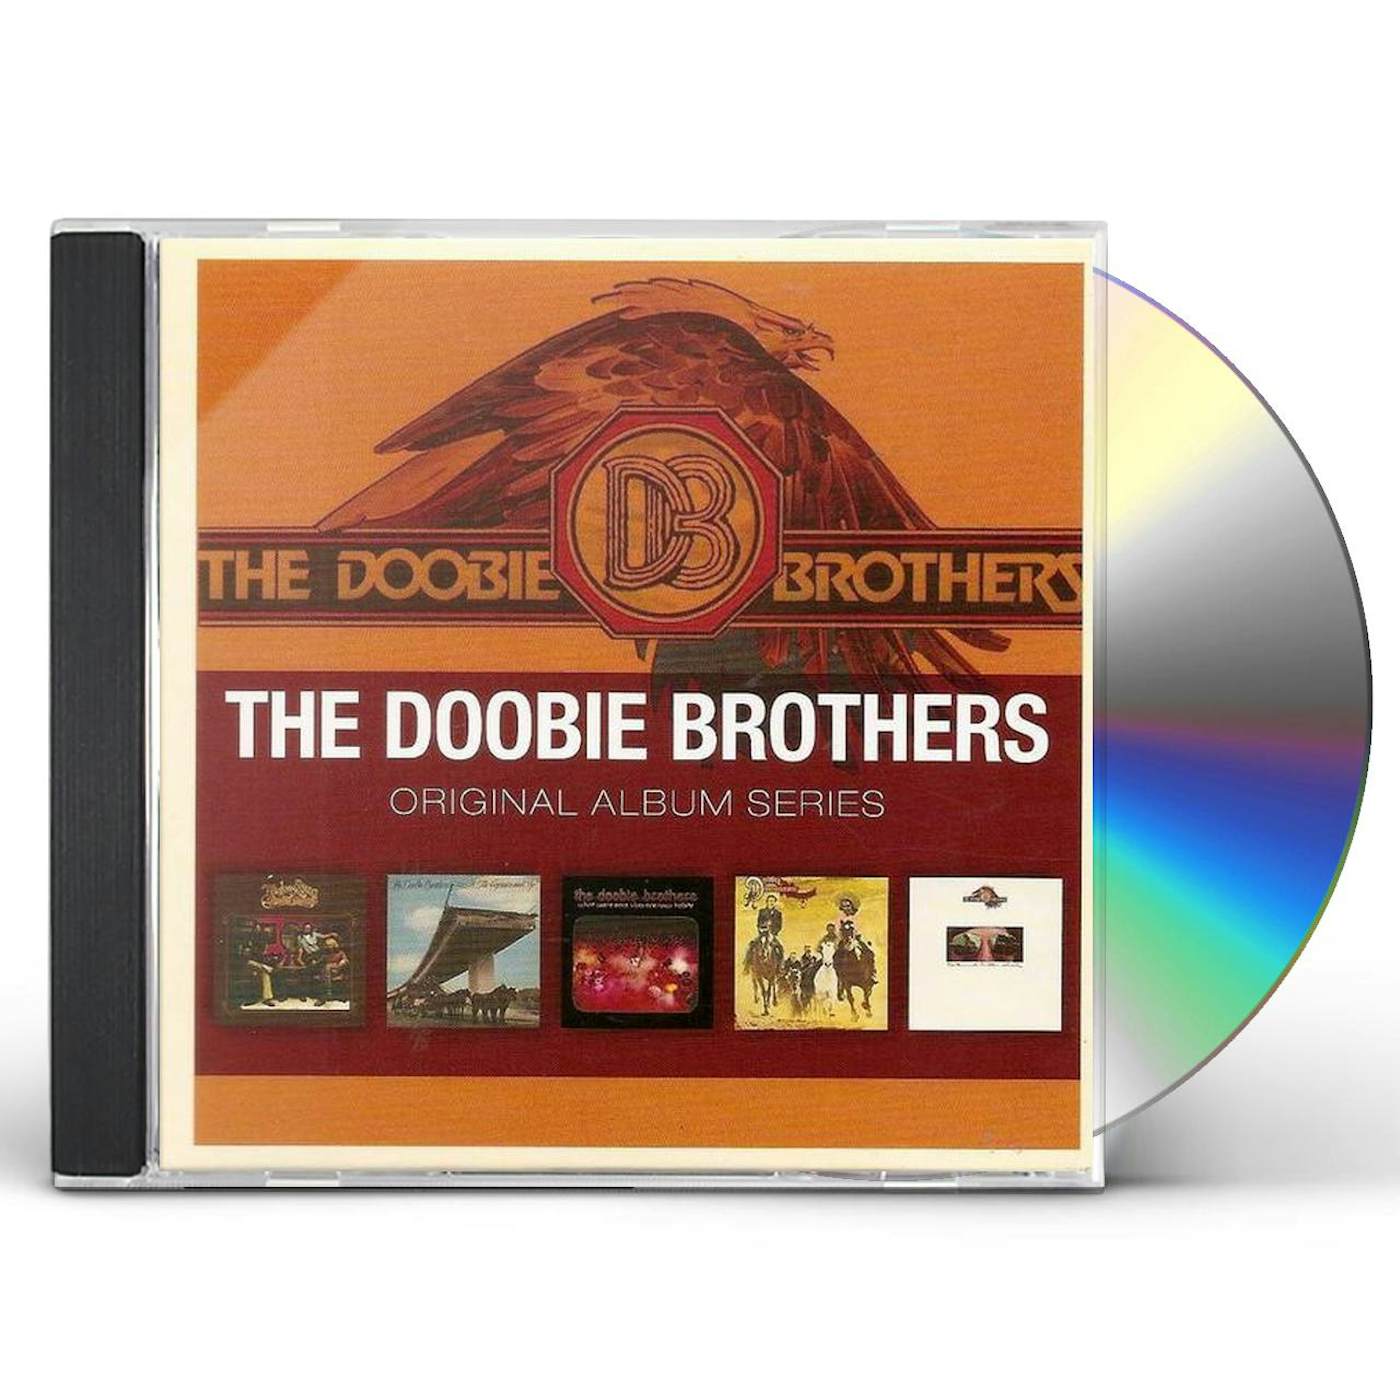 The Doobie Brothers ORIGINAL ALBUM SERIES CD